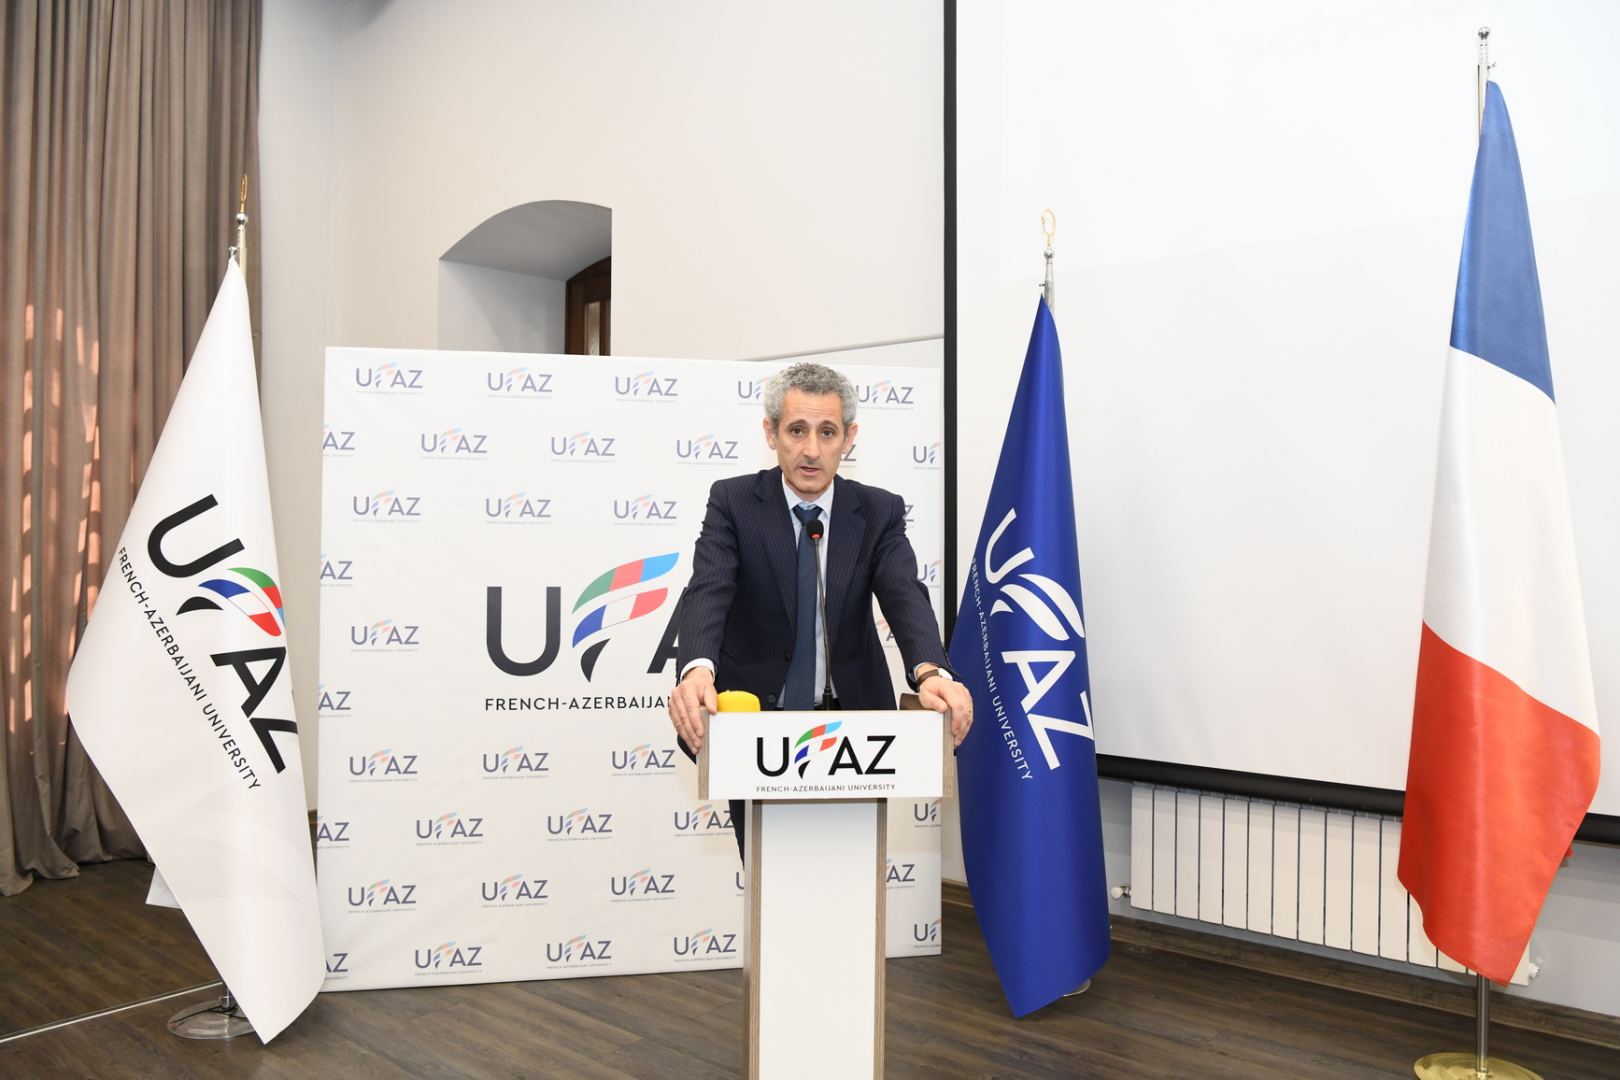 UFAZ-da Fransa səfirliyi, ADNSU və Strasburq universiteti arasında əməkdaşlıq sazişi imzalanıb (FOTO)